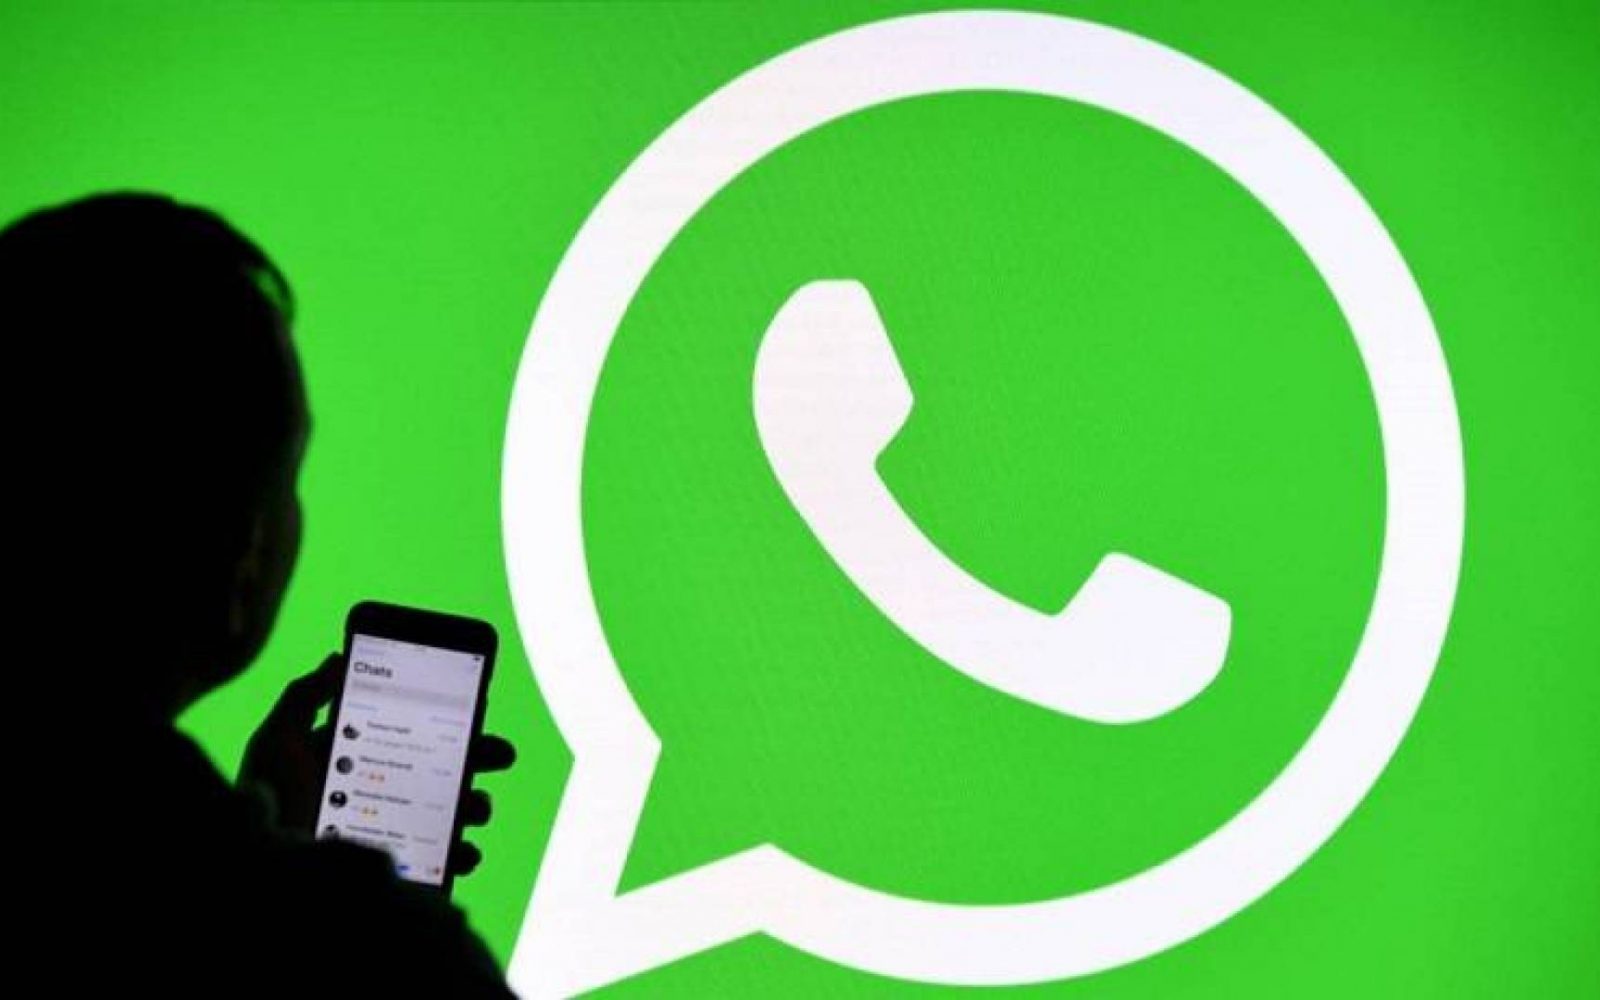 واتسآب تُعلن عن موعد إطلاق خدمة الدفع الإلكتروني WhatsApp Pay